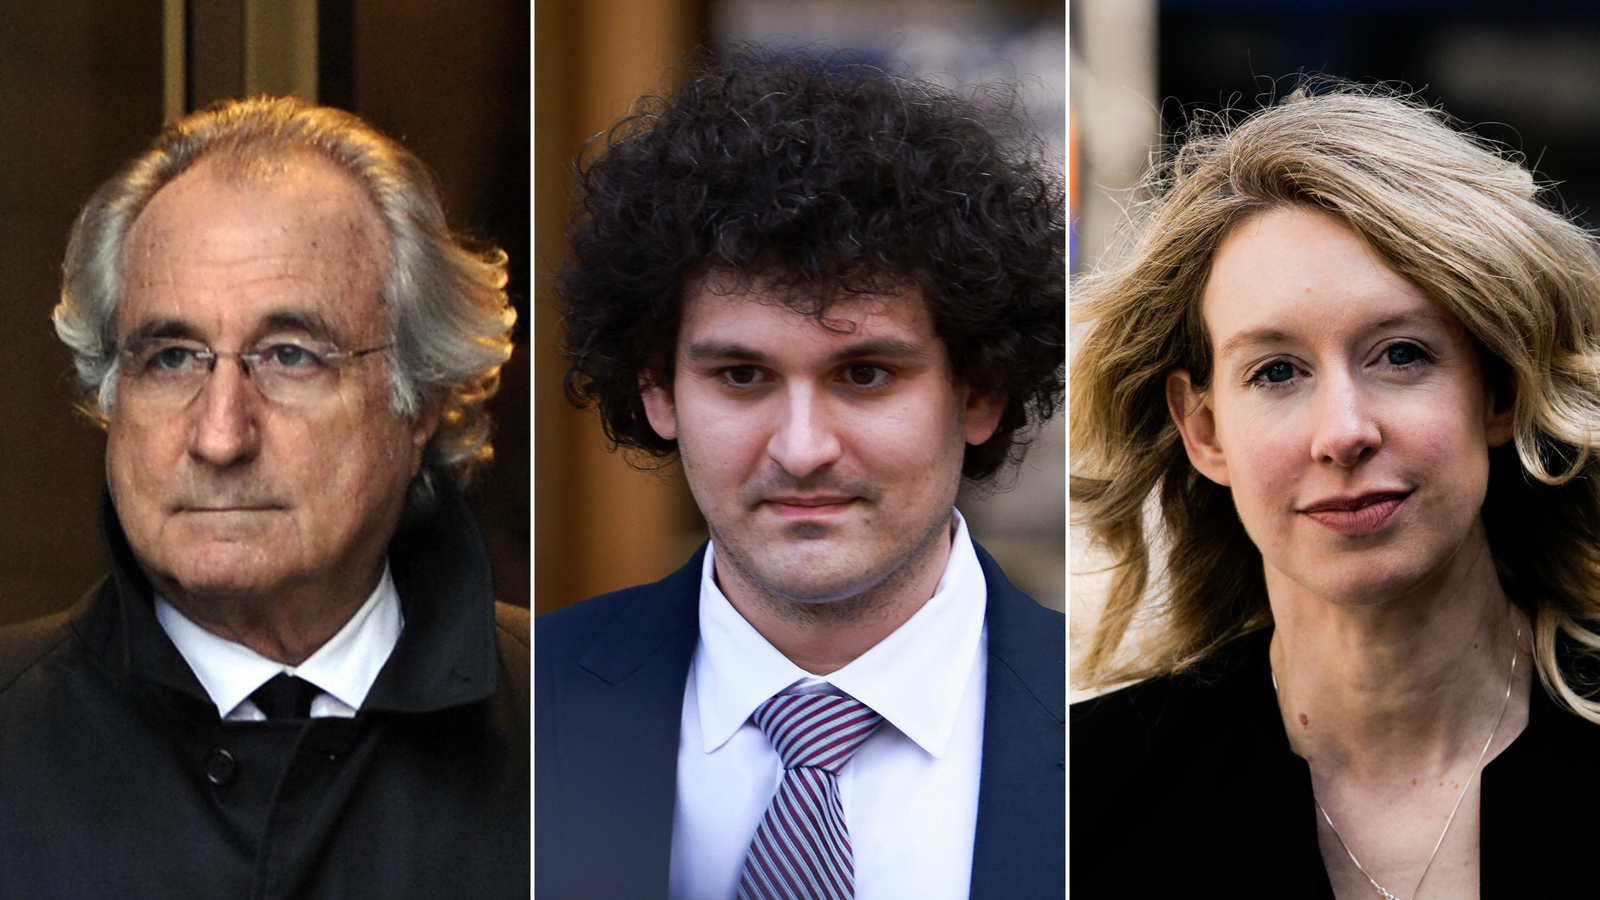 L to R: Bernard Madoff, Sam Bankman-Fried, Elizabeth Holmes.